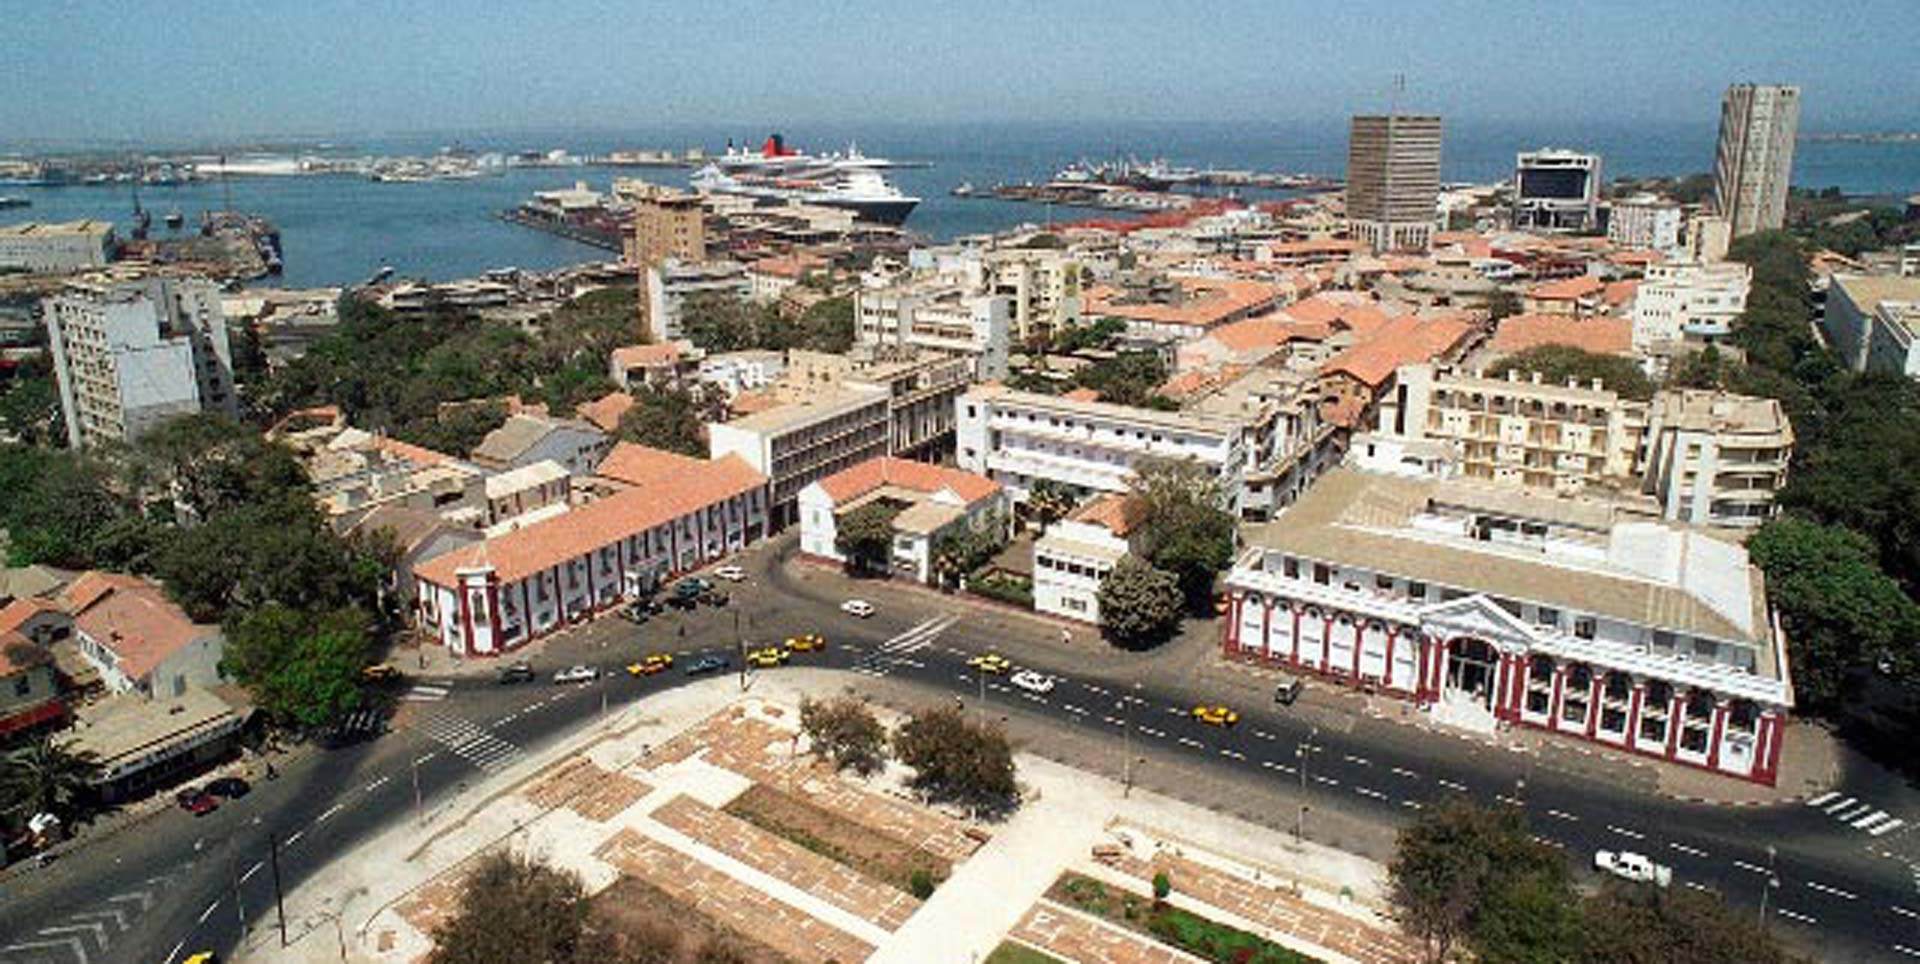 Réalités de la ville de Dakar.